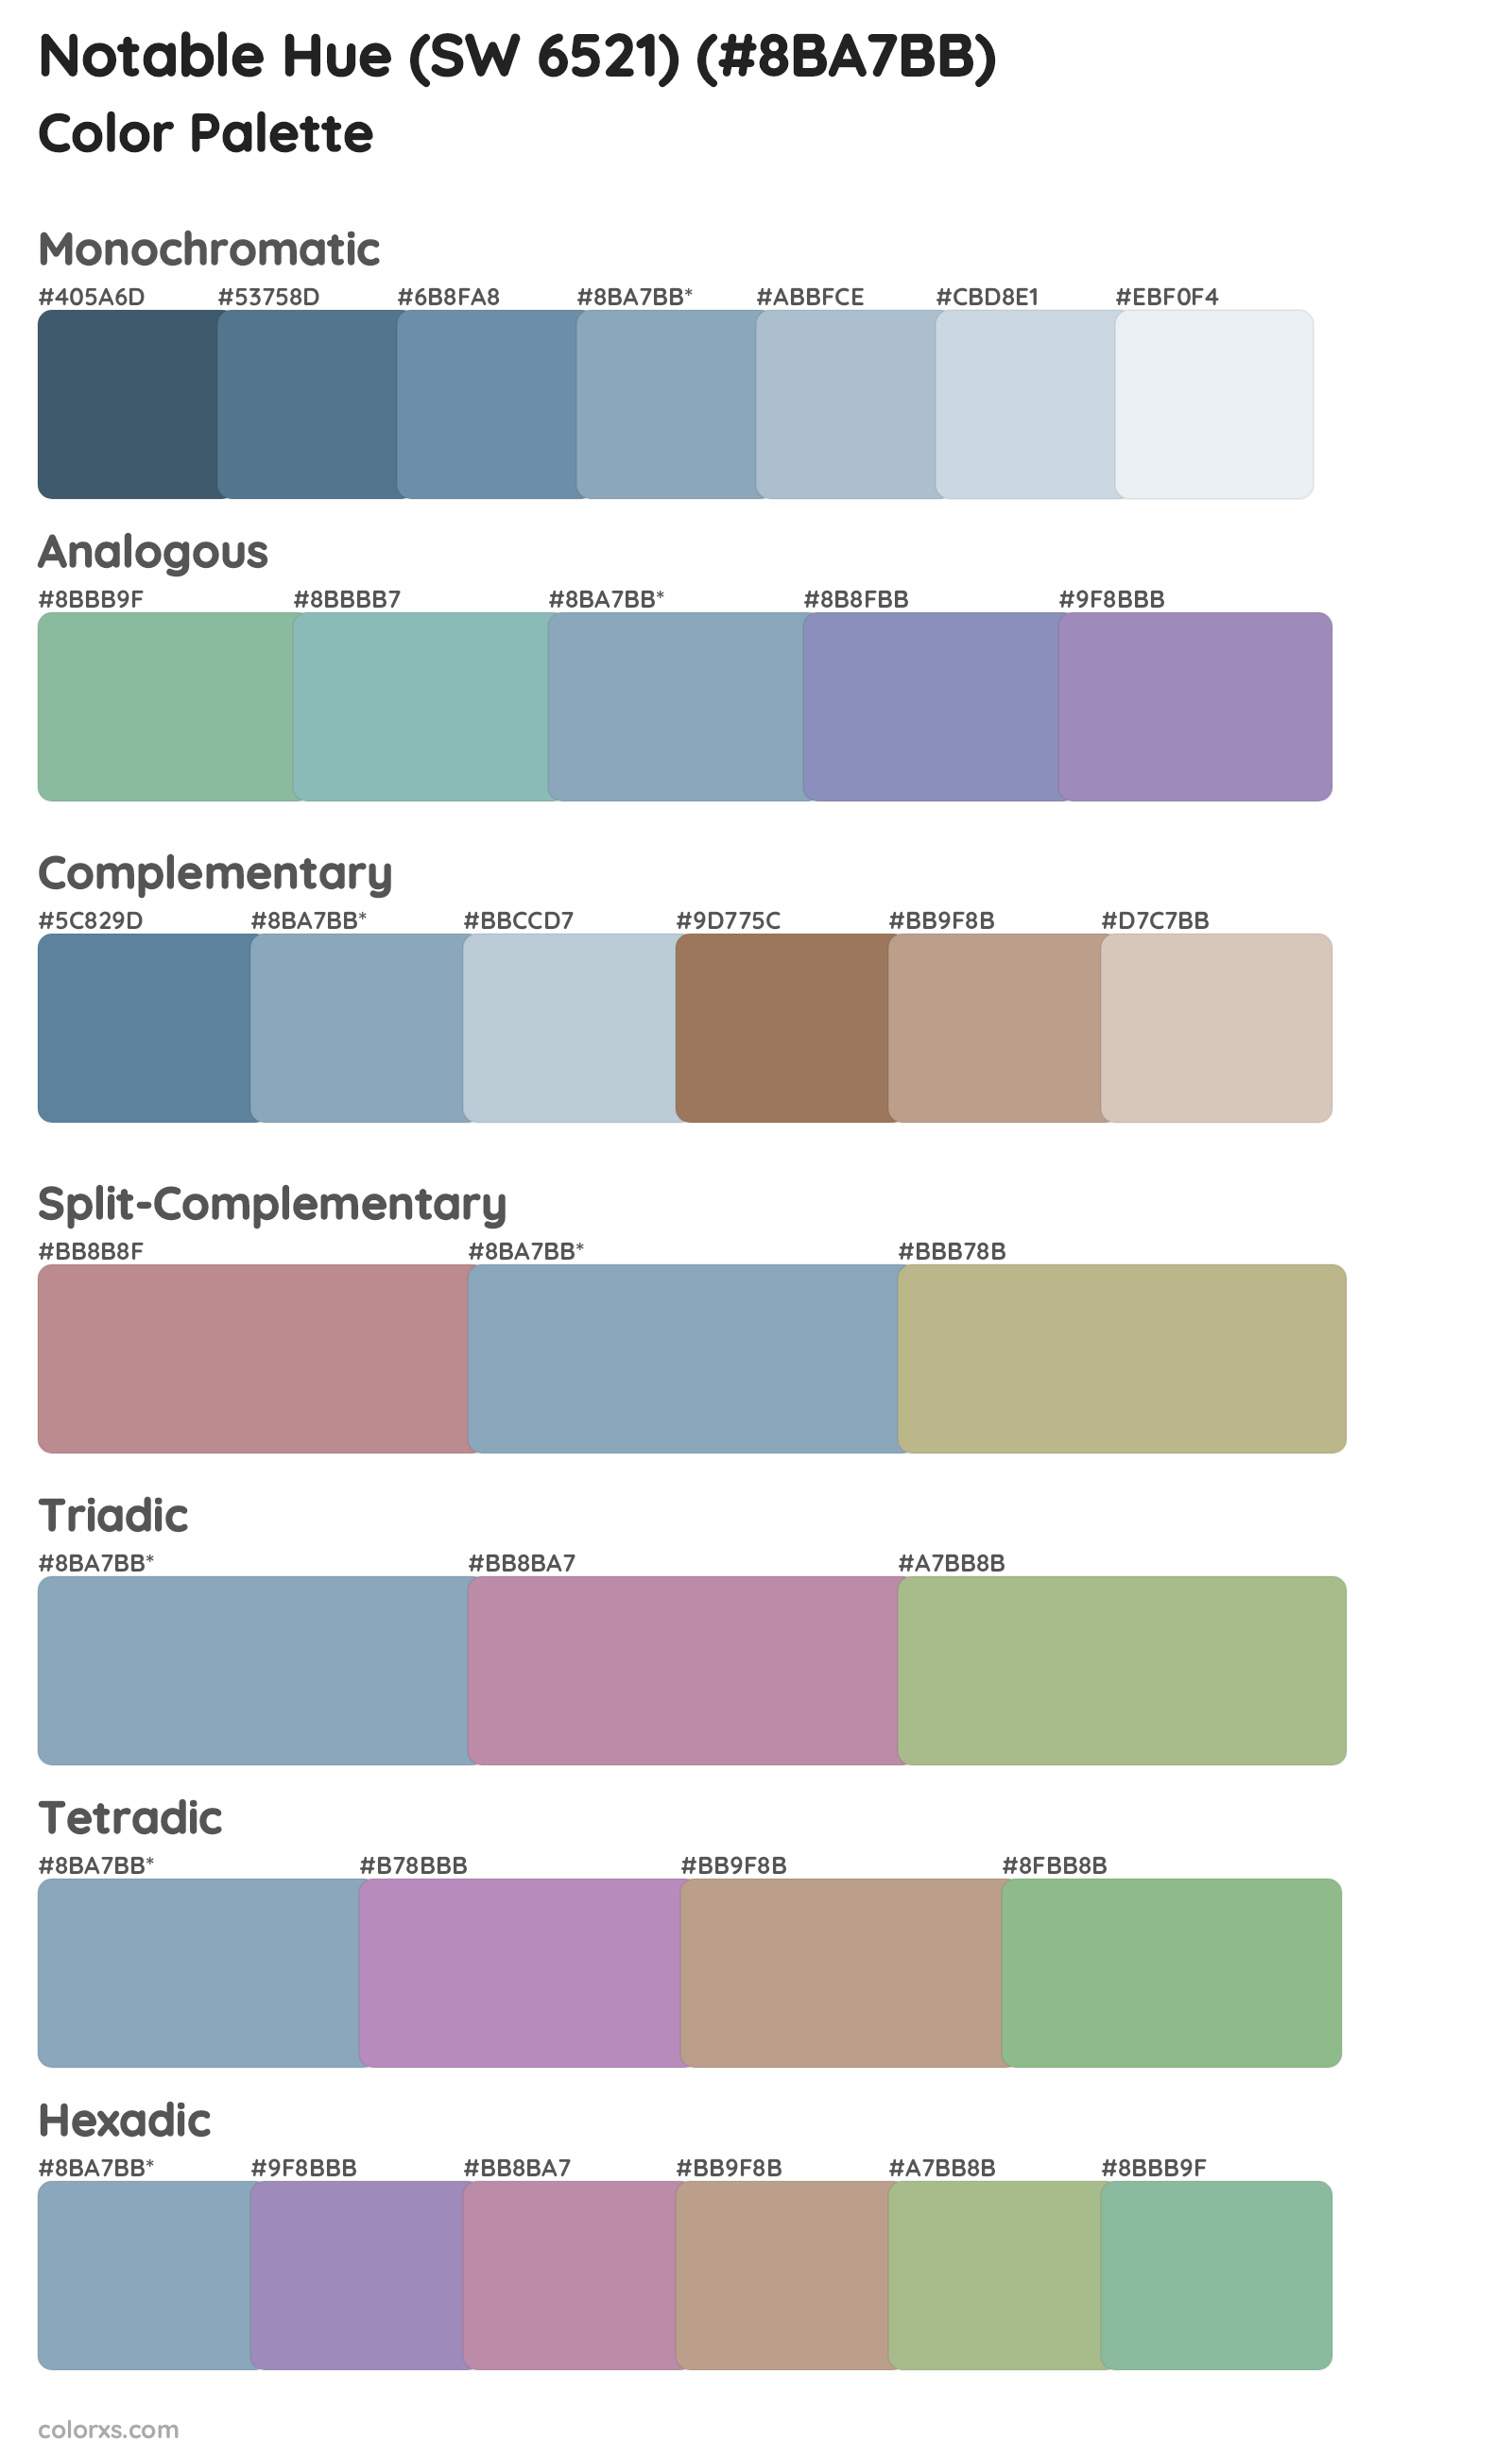 Notable Hue (SW 6521) Color Scheme Palettes